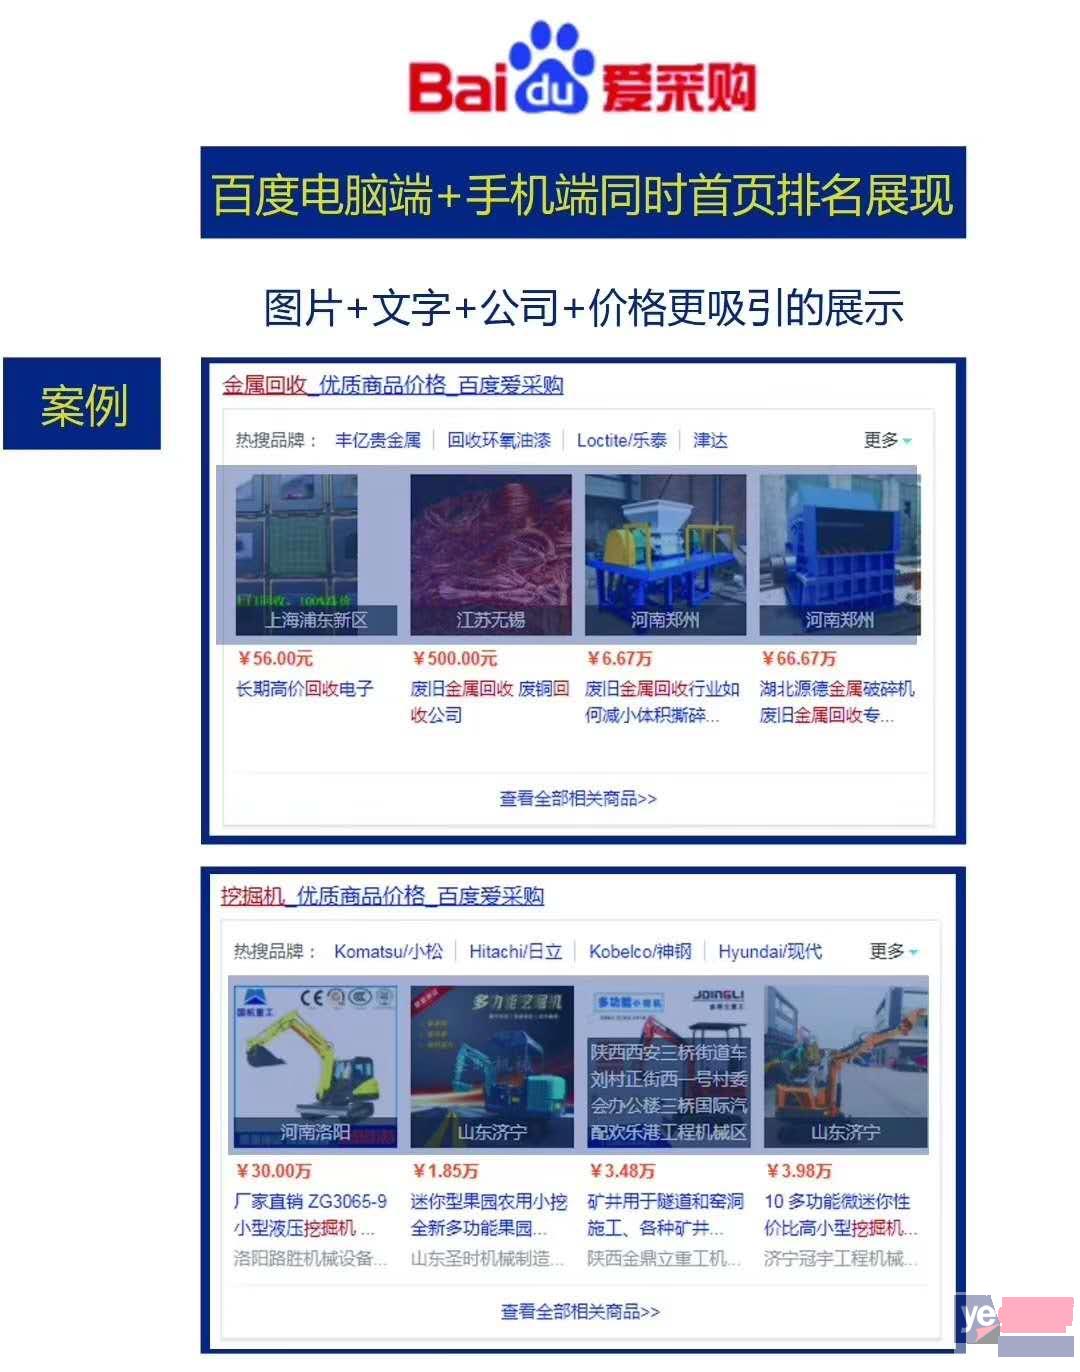 广州天河哪里有做网站推广的,要怎么做? 新闻资讯